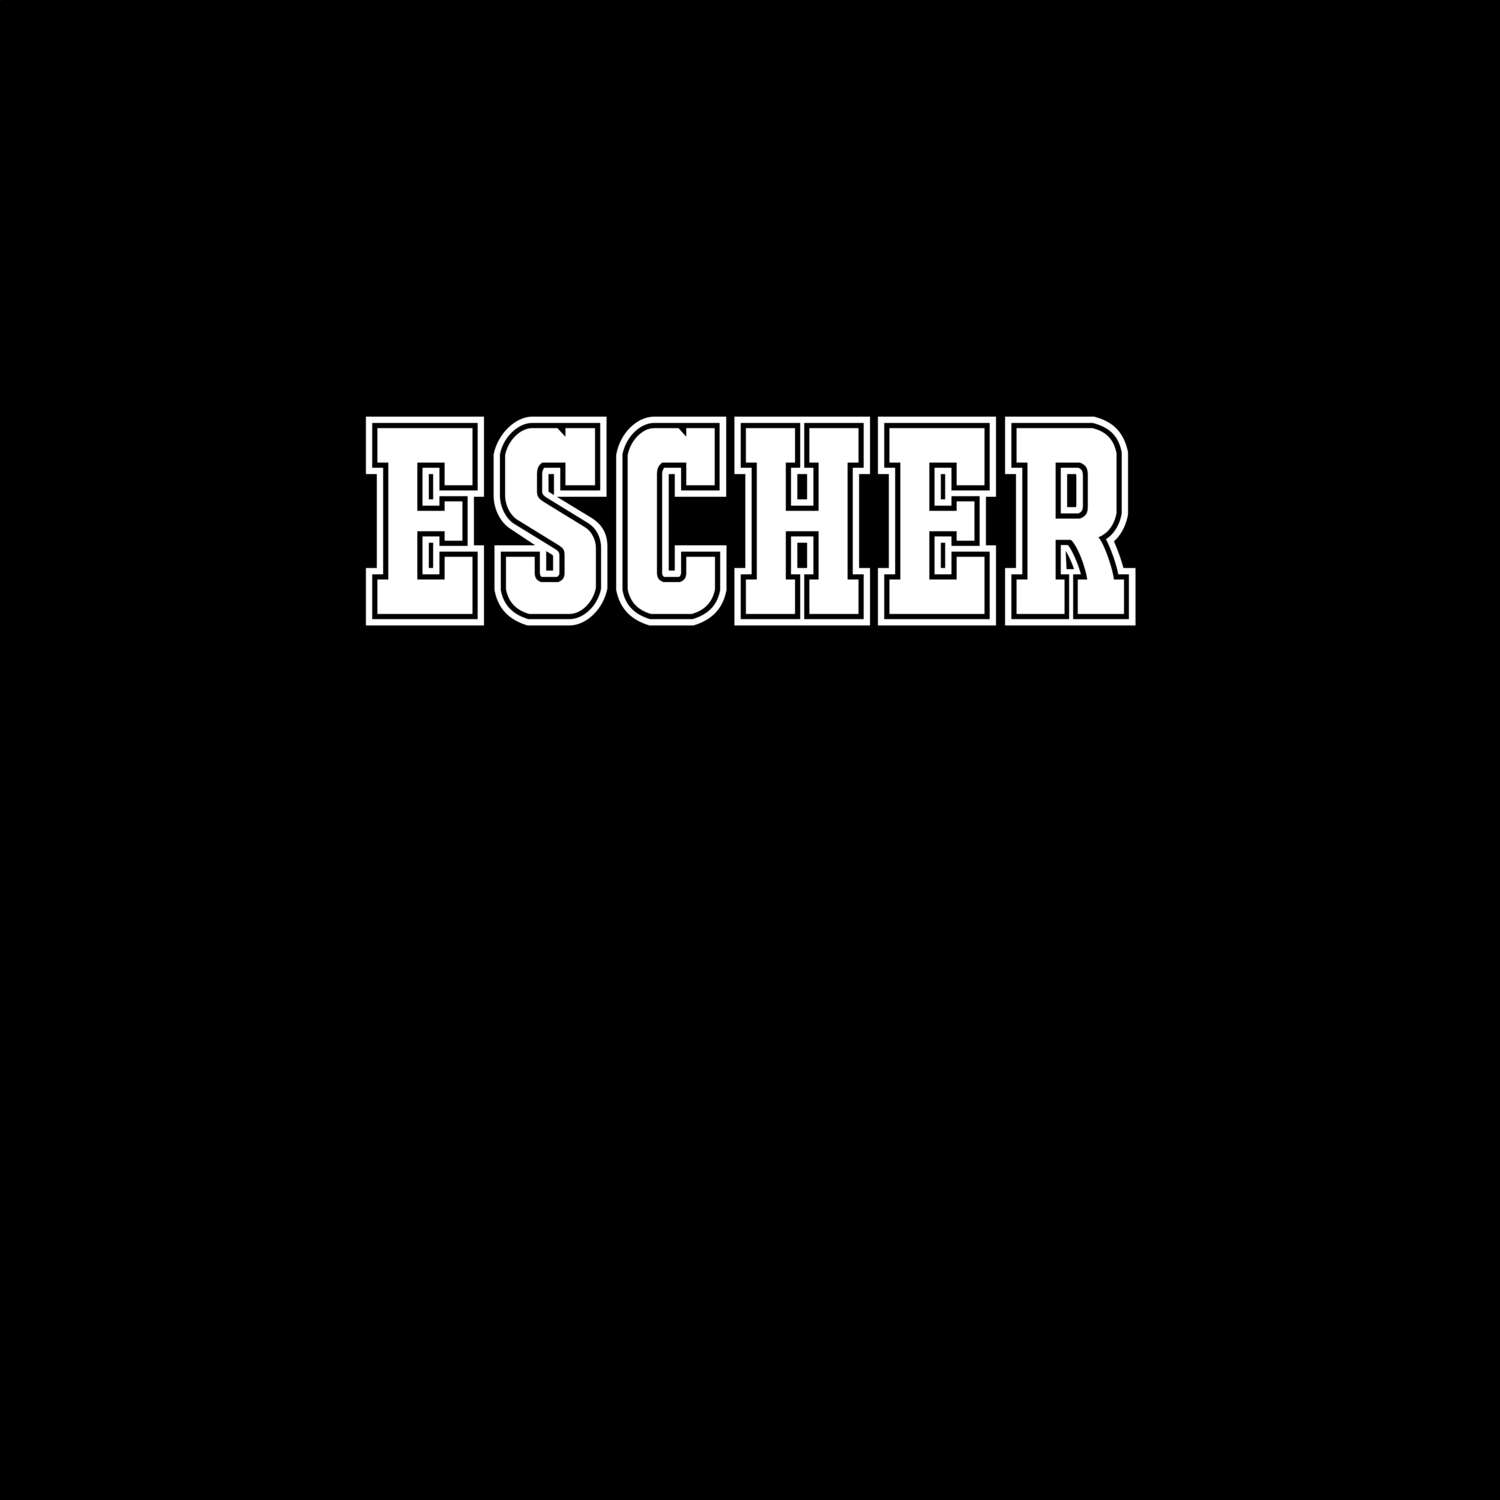 Escher T-Shirt »Classic«